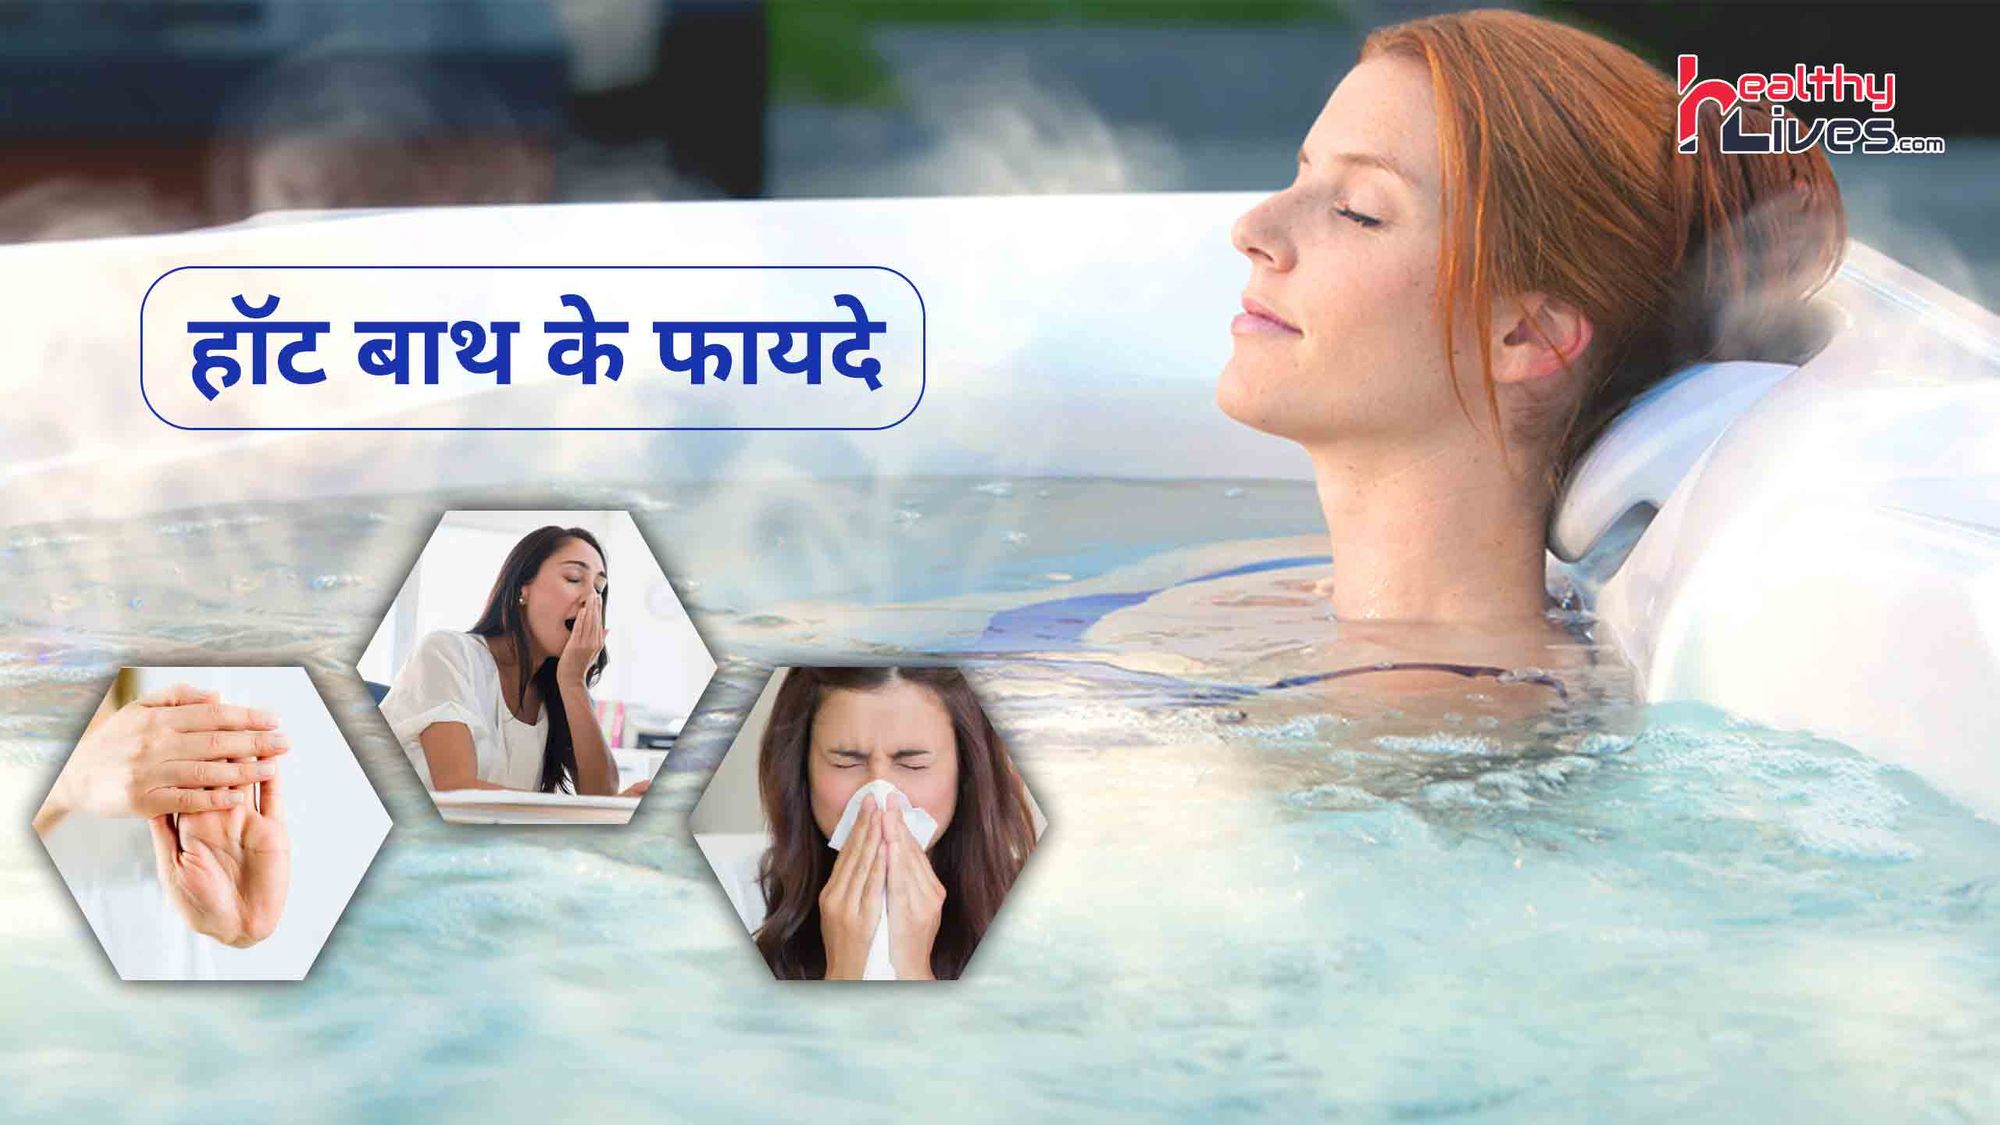 Hot bath: तनाव दूर कर मानसिक शांति बढ़ाने में सहायक होता है सर्दियों में गर्म पानी से स्नान